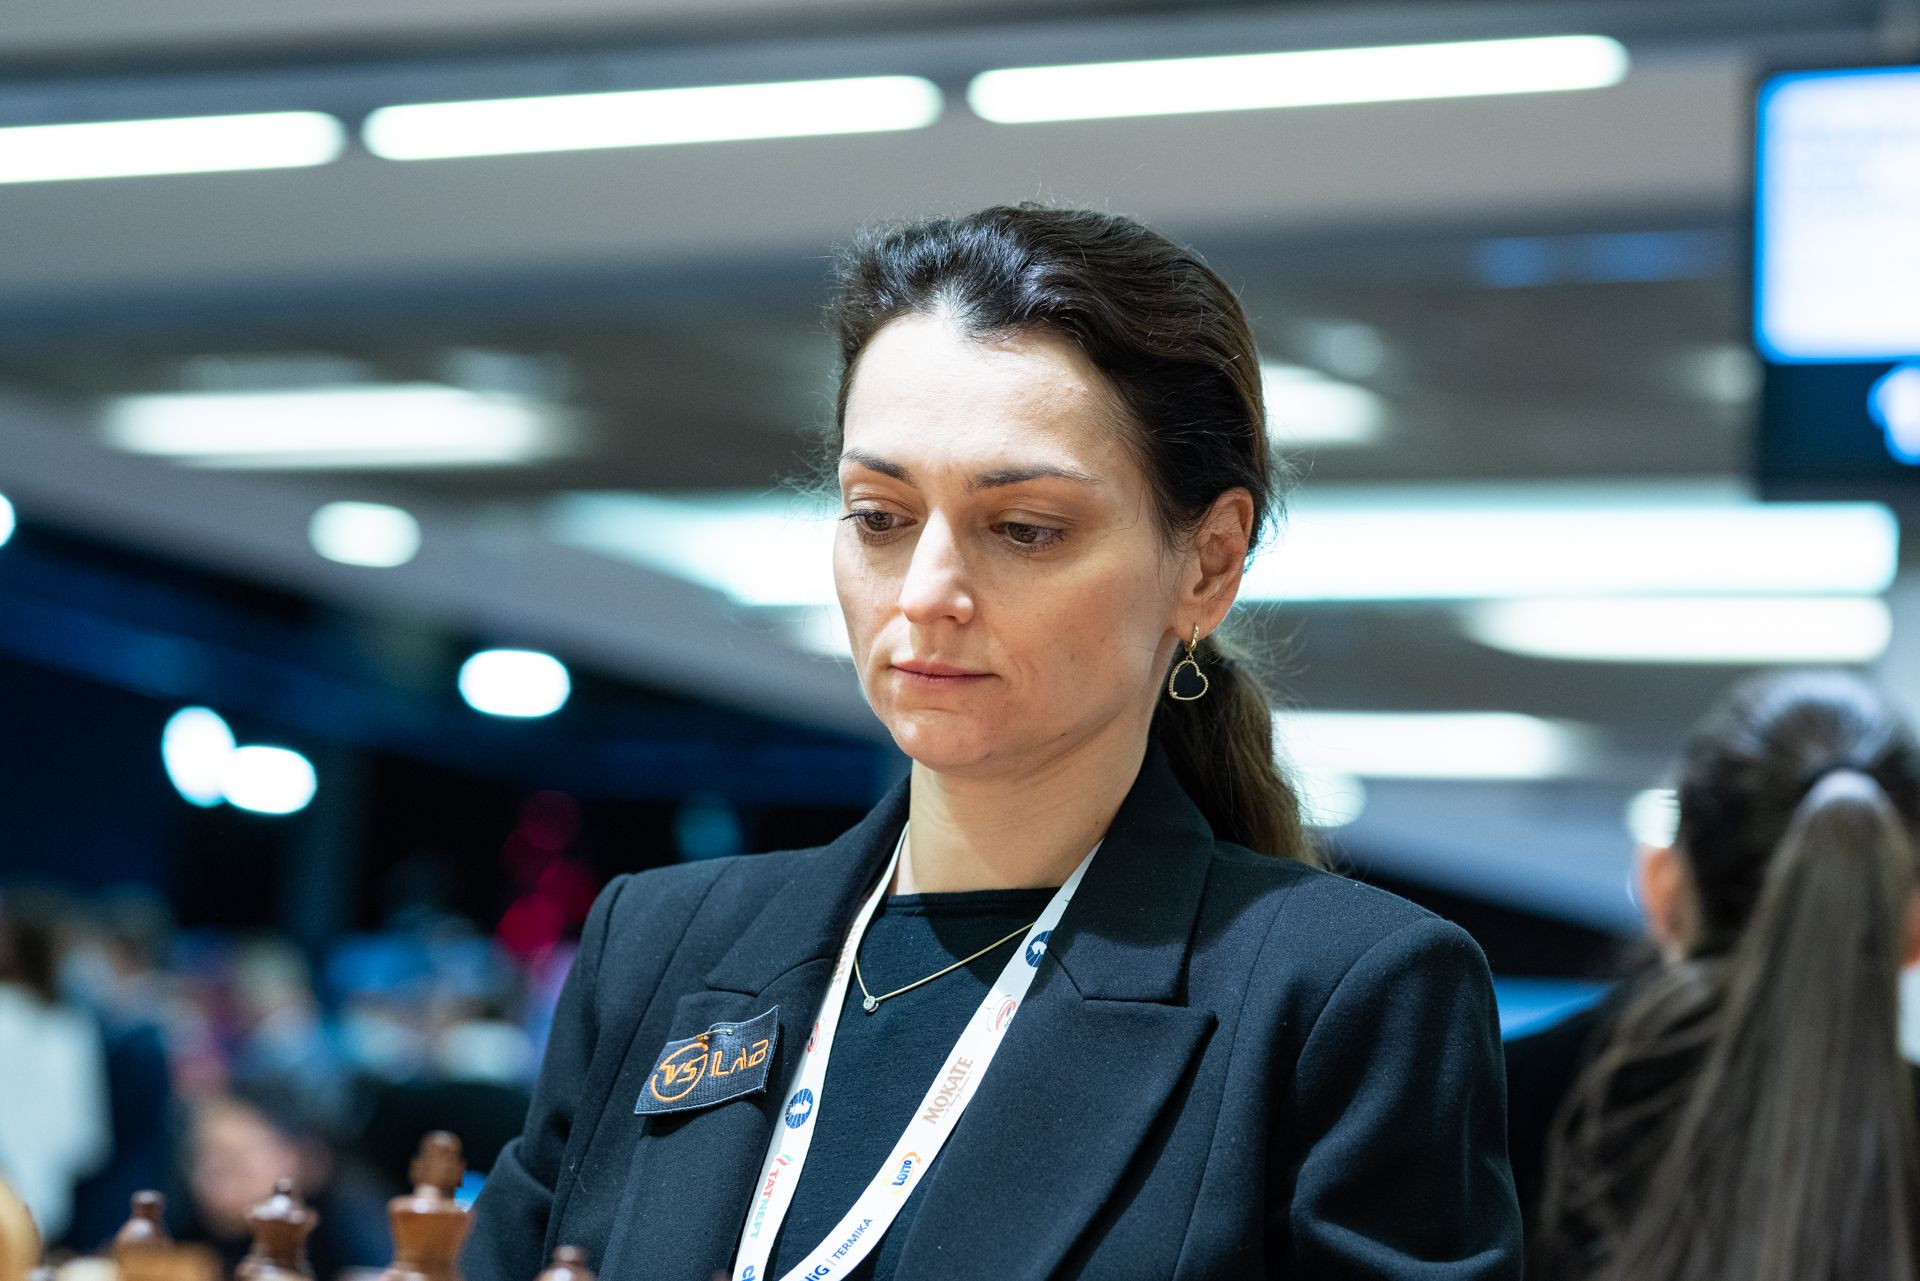 Campeonato Mundial de Blitz - dia 01: Aronian e Assaubayeva